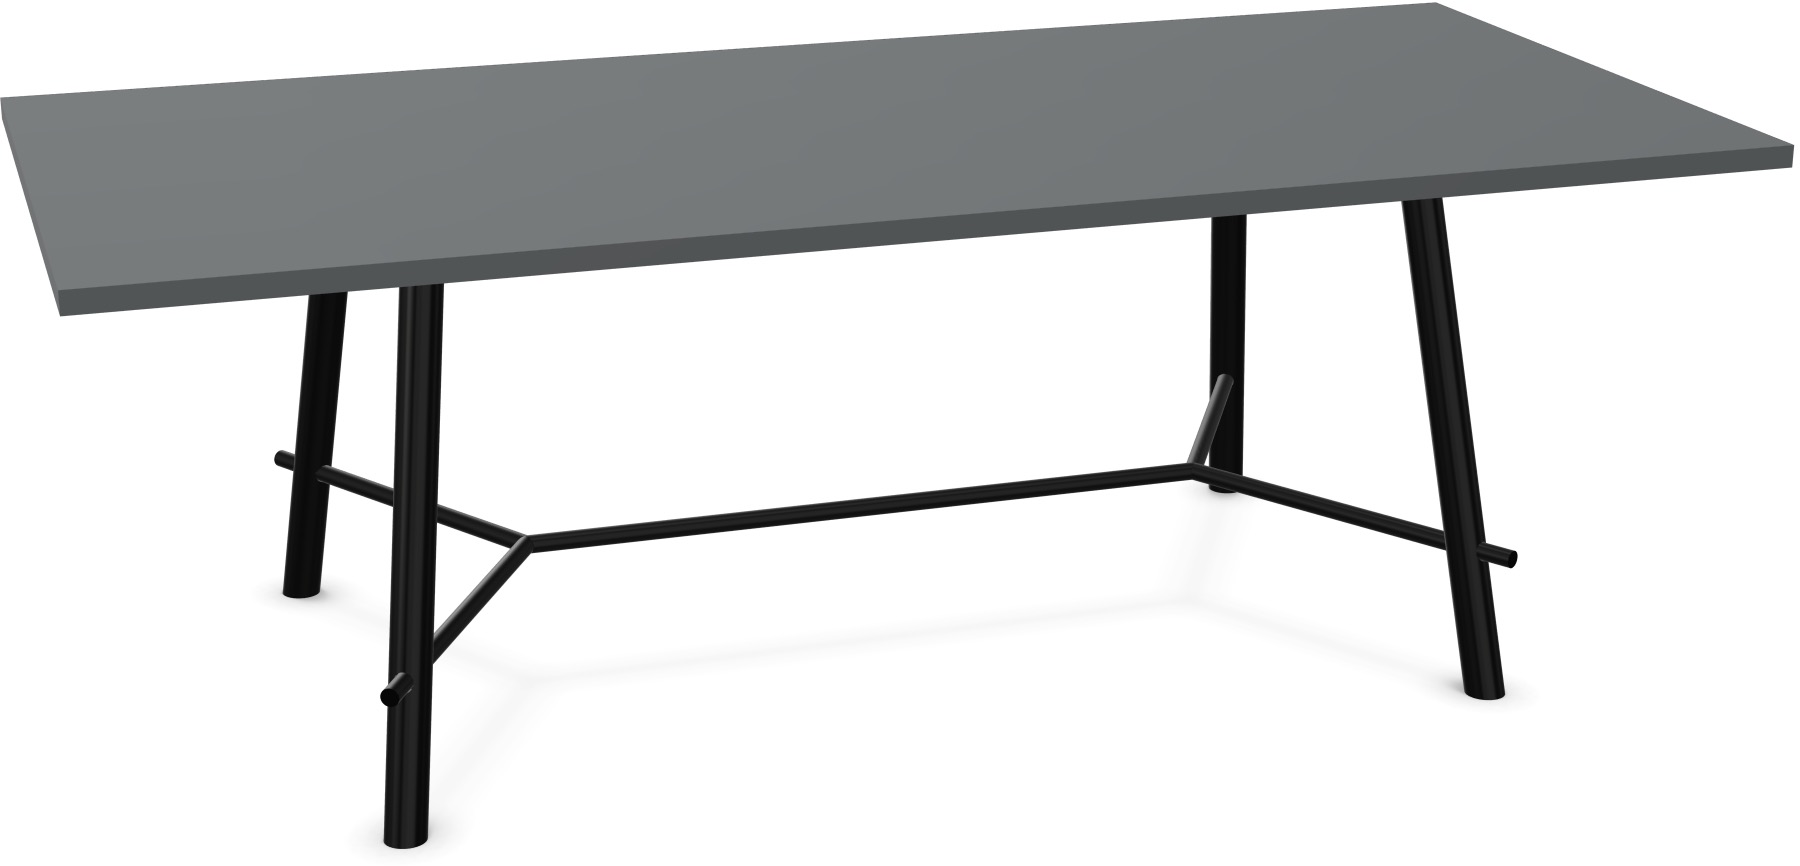 Record Living Maxi Tisch in Anthrazit / Schwarz präsentiert im Onlineshop von KAQTU Design AG. Esstisch ist von Infiniti Design